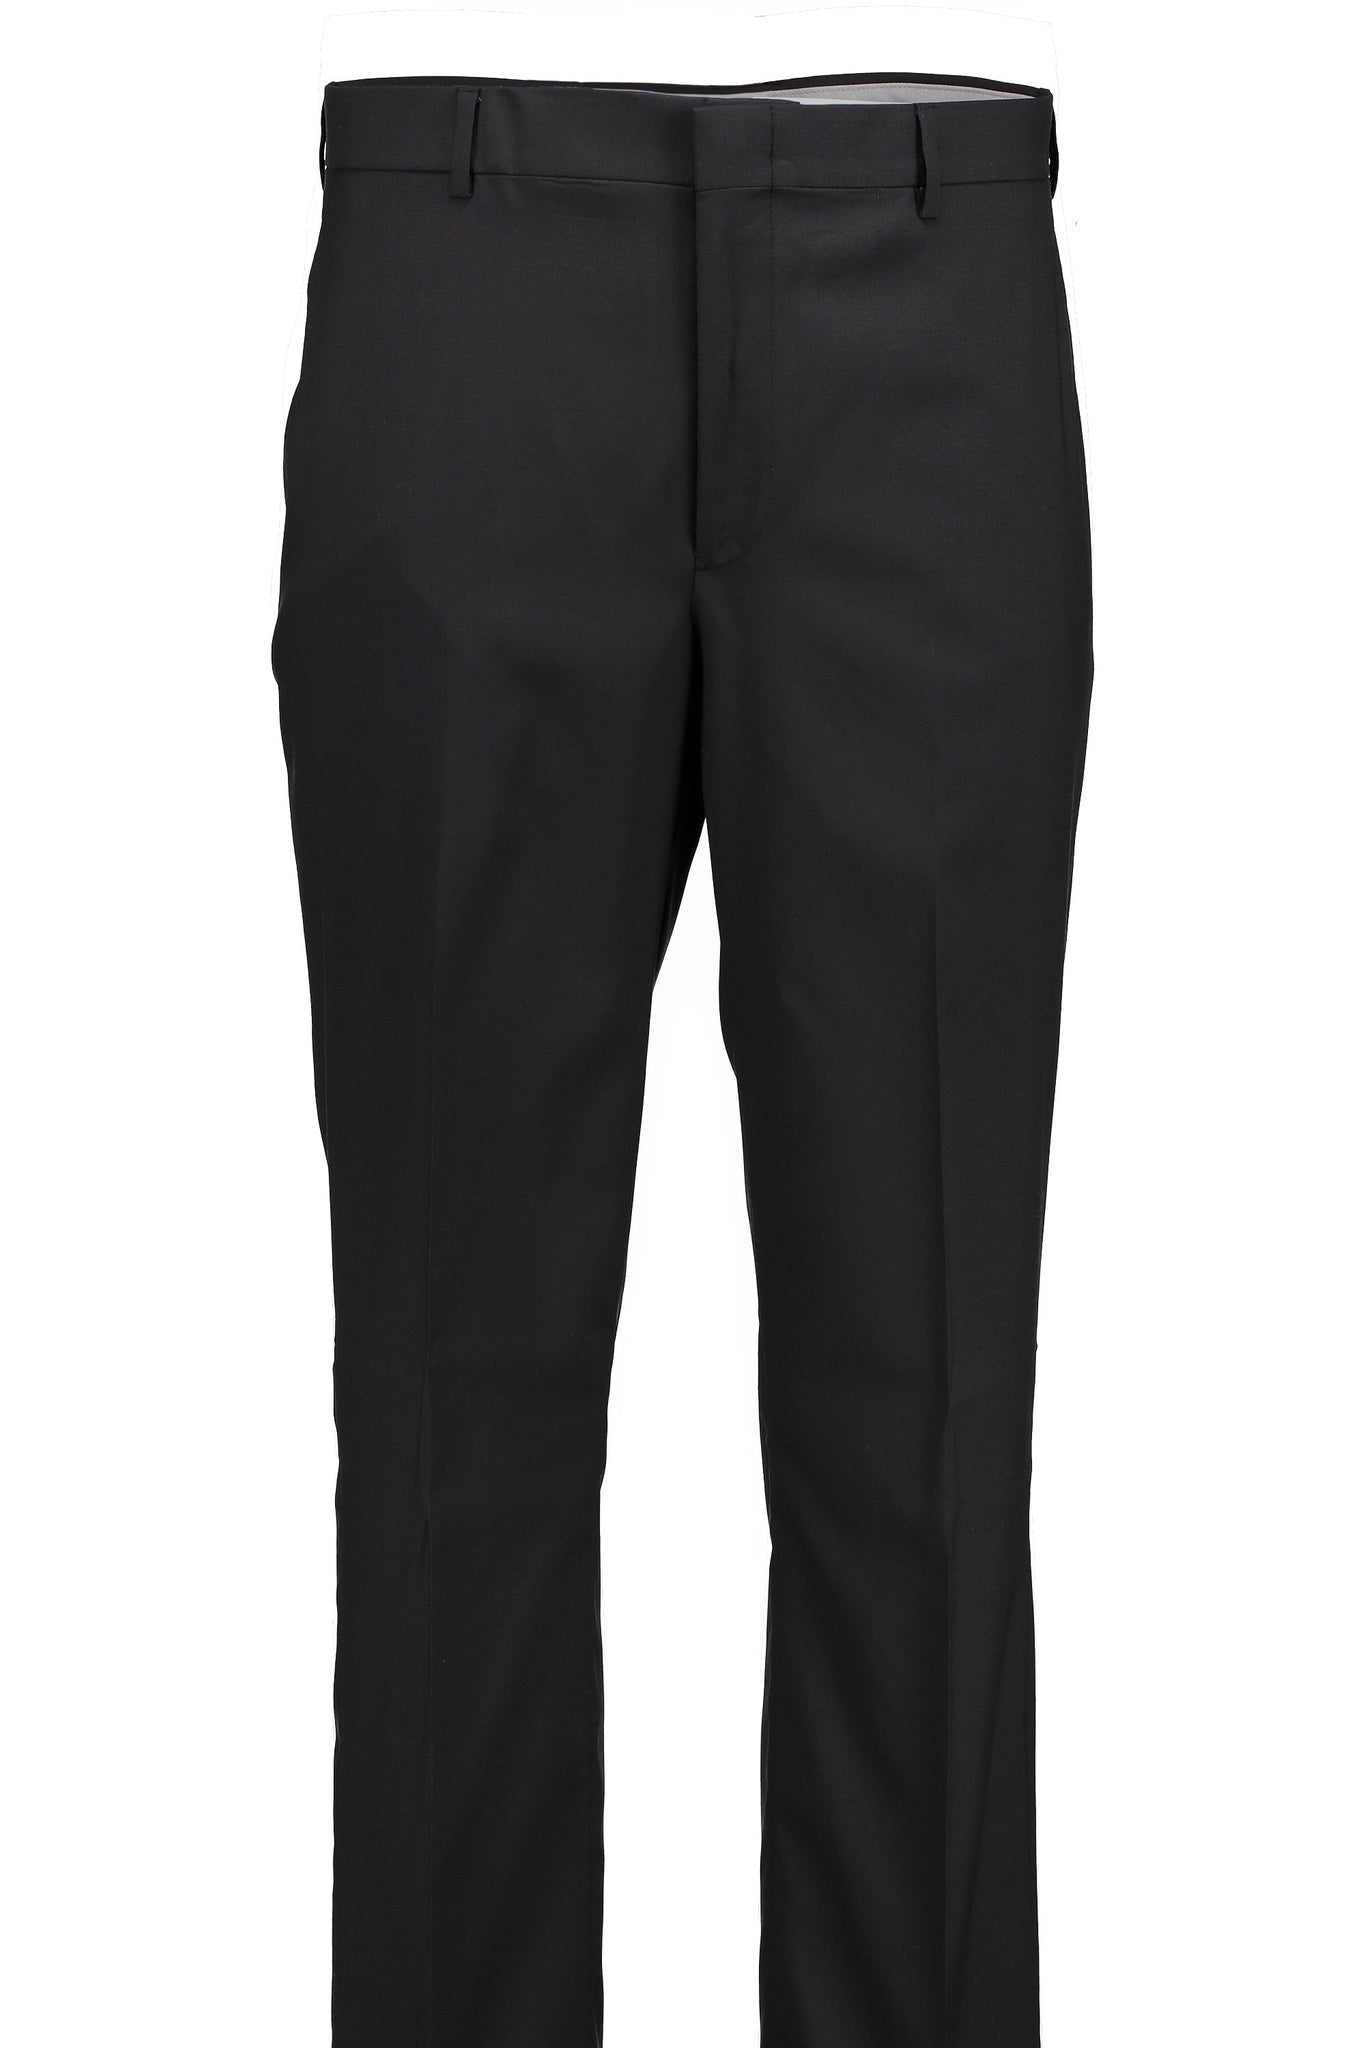 Classic Fit Black H-Tech Wool Suit Separate Flat Front Pants -  Hardwick.com